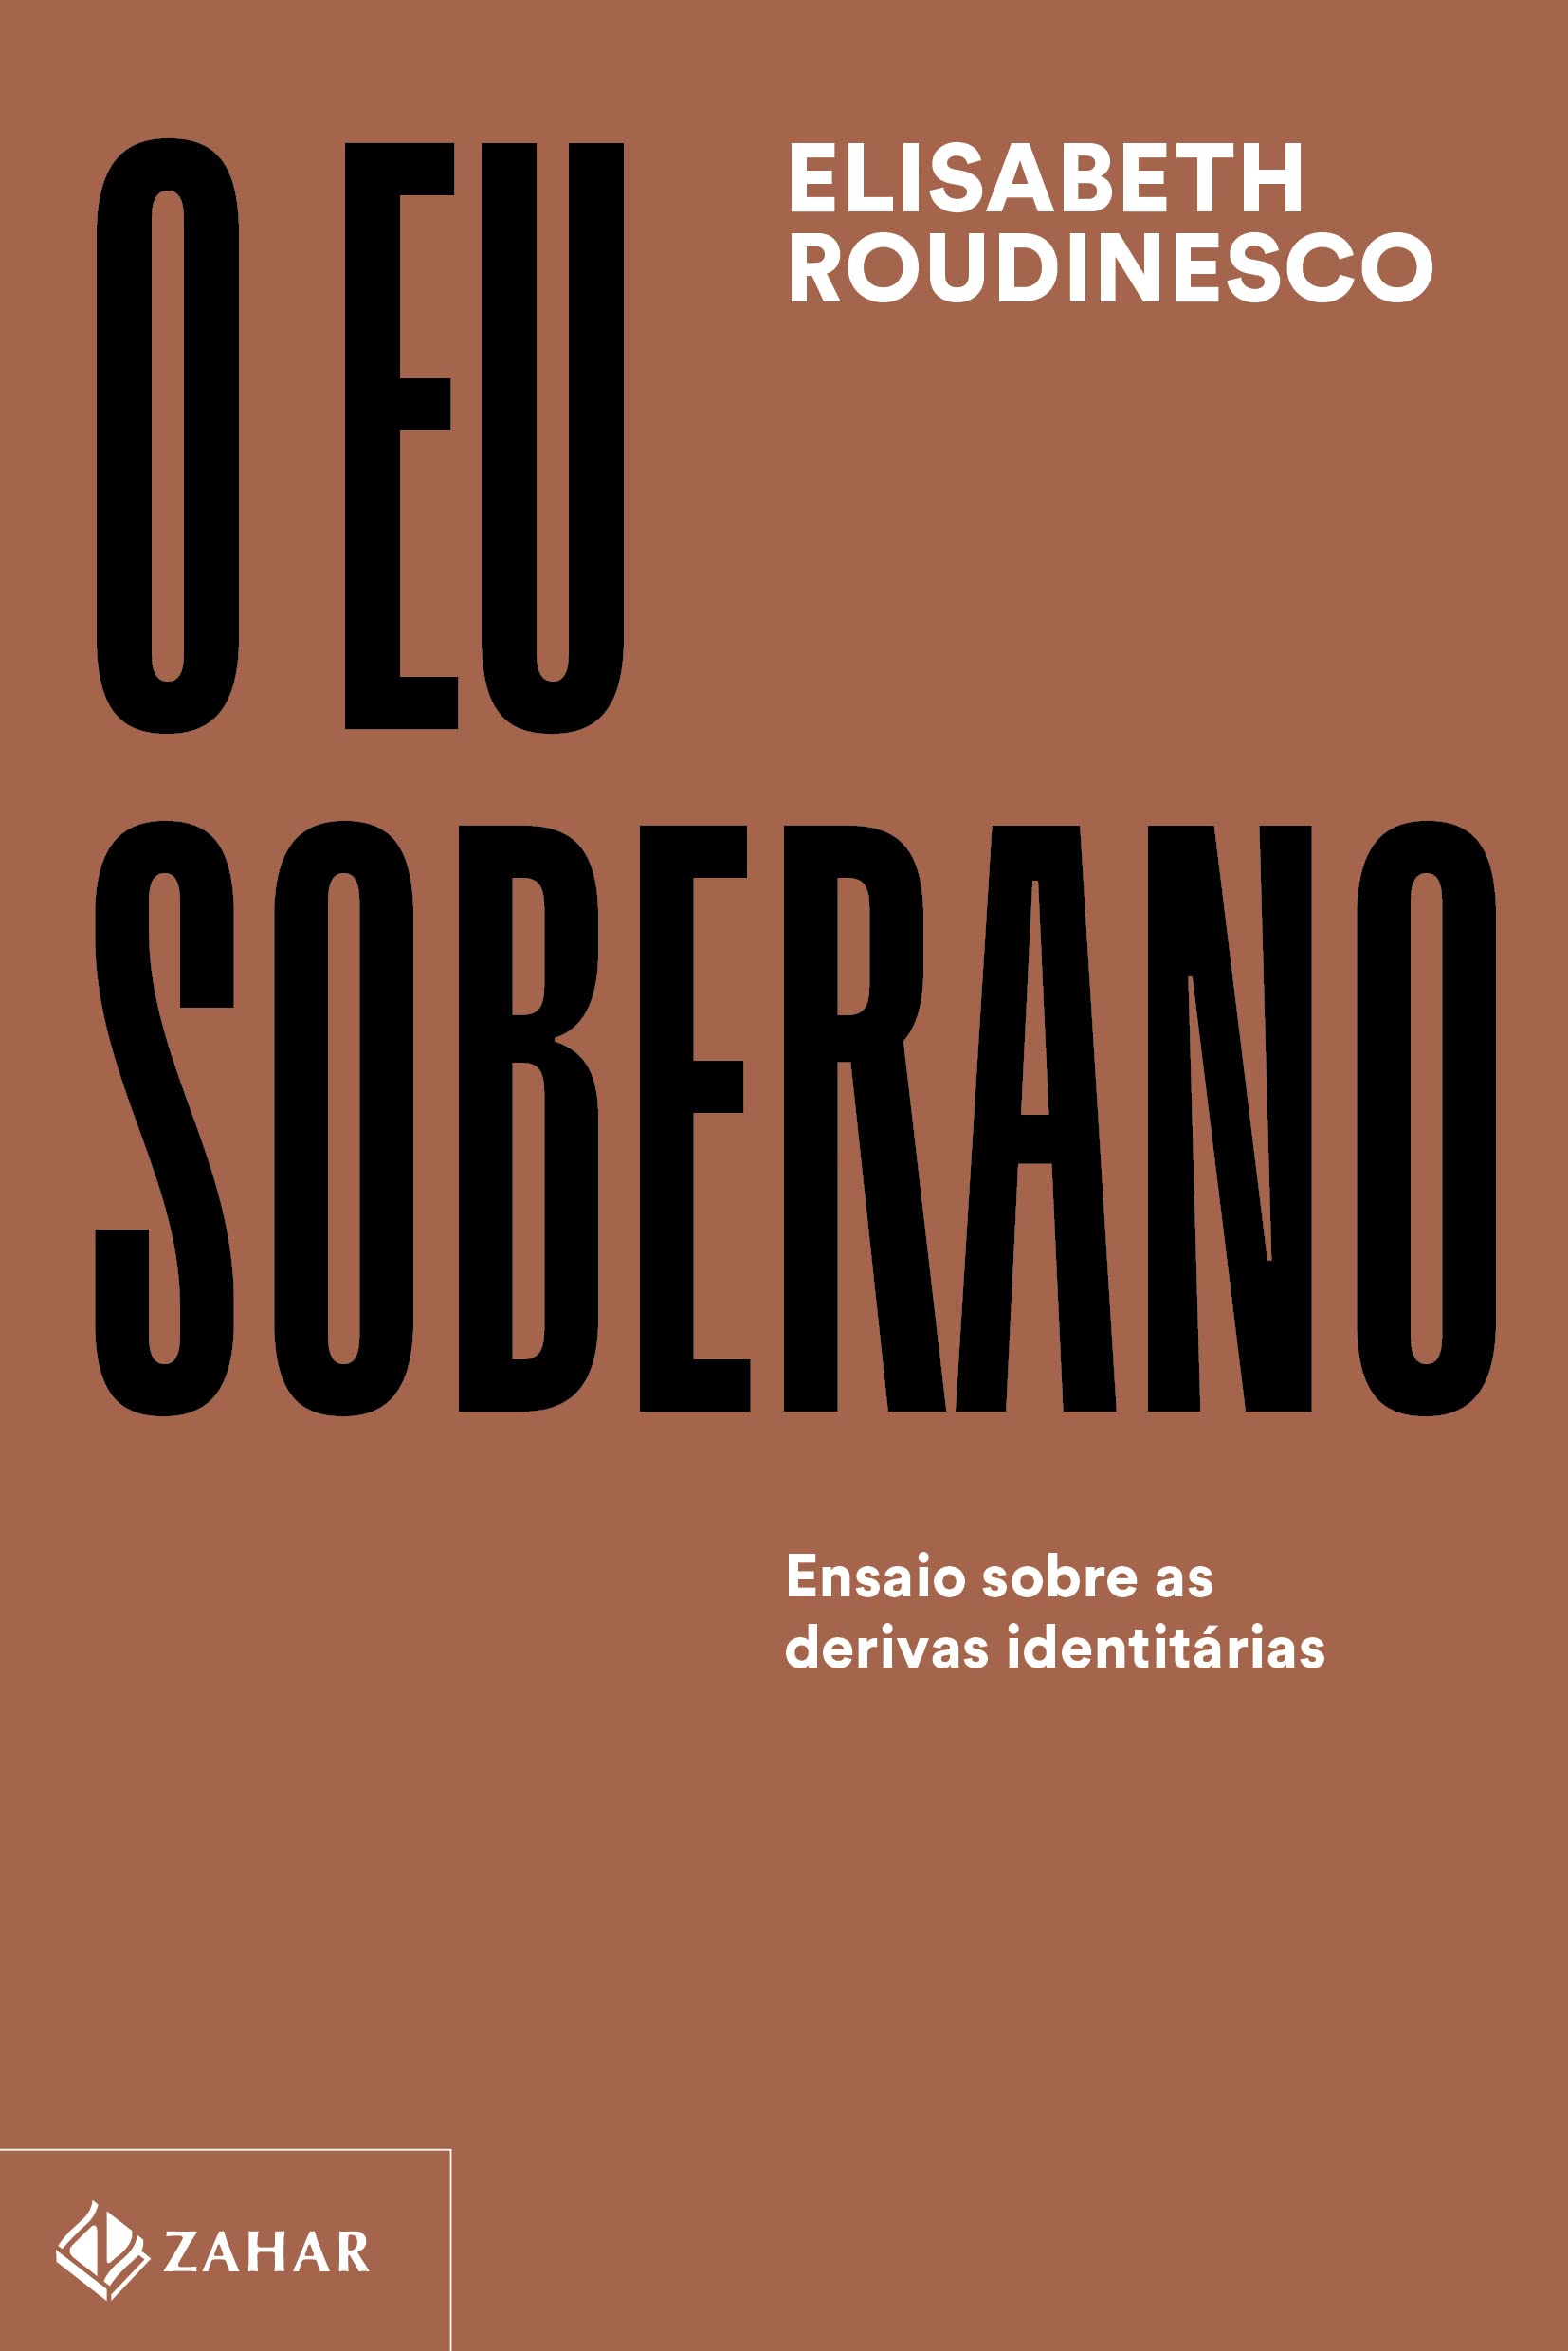 O eu soberano (Português language, Zahar)